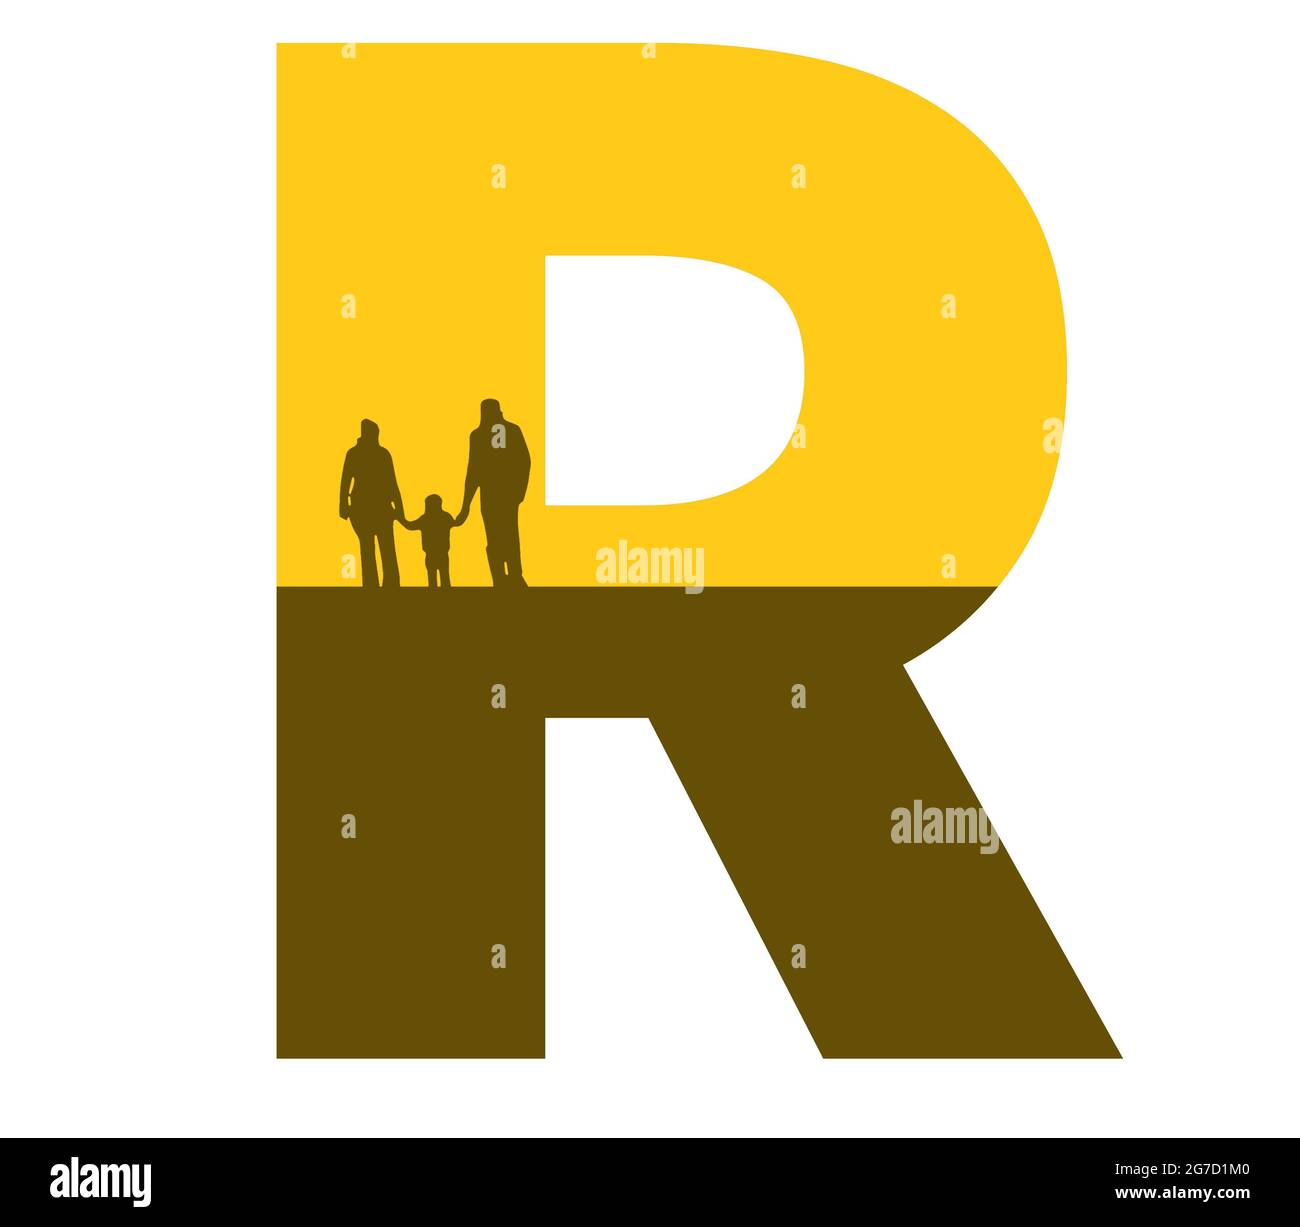 Lettre R de l'alphabet avec une silhouette de famille, de père, de mère et d'enfant, de couleur ocre et marron Banque D'Images